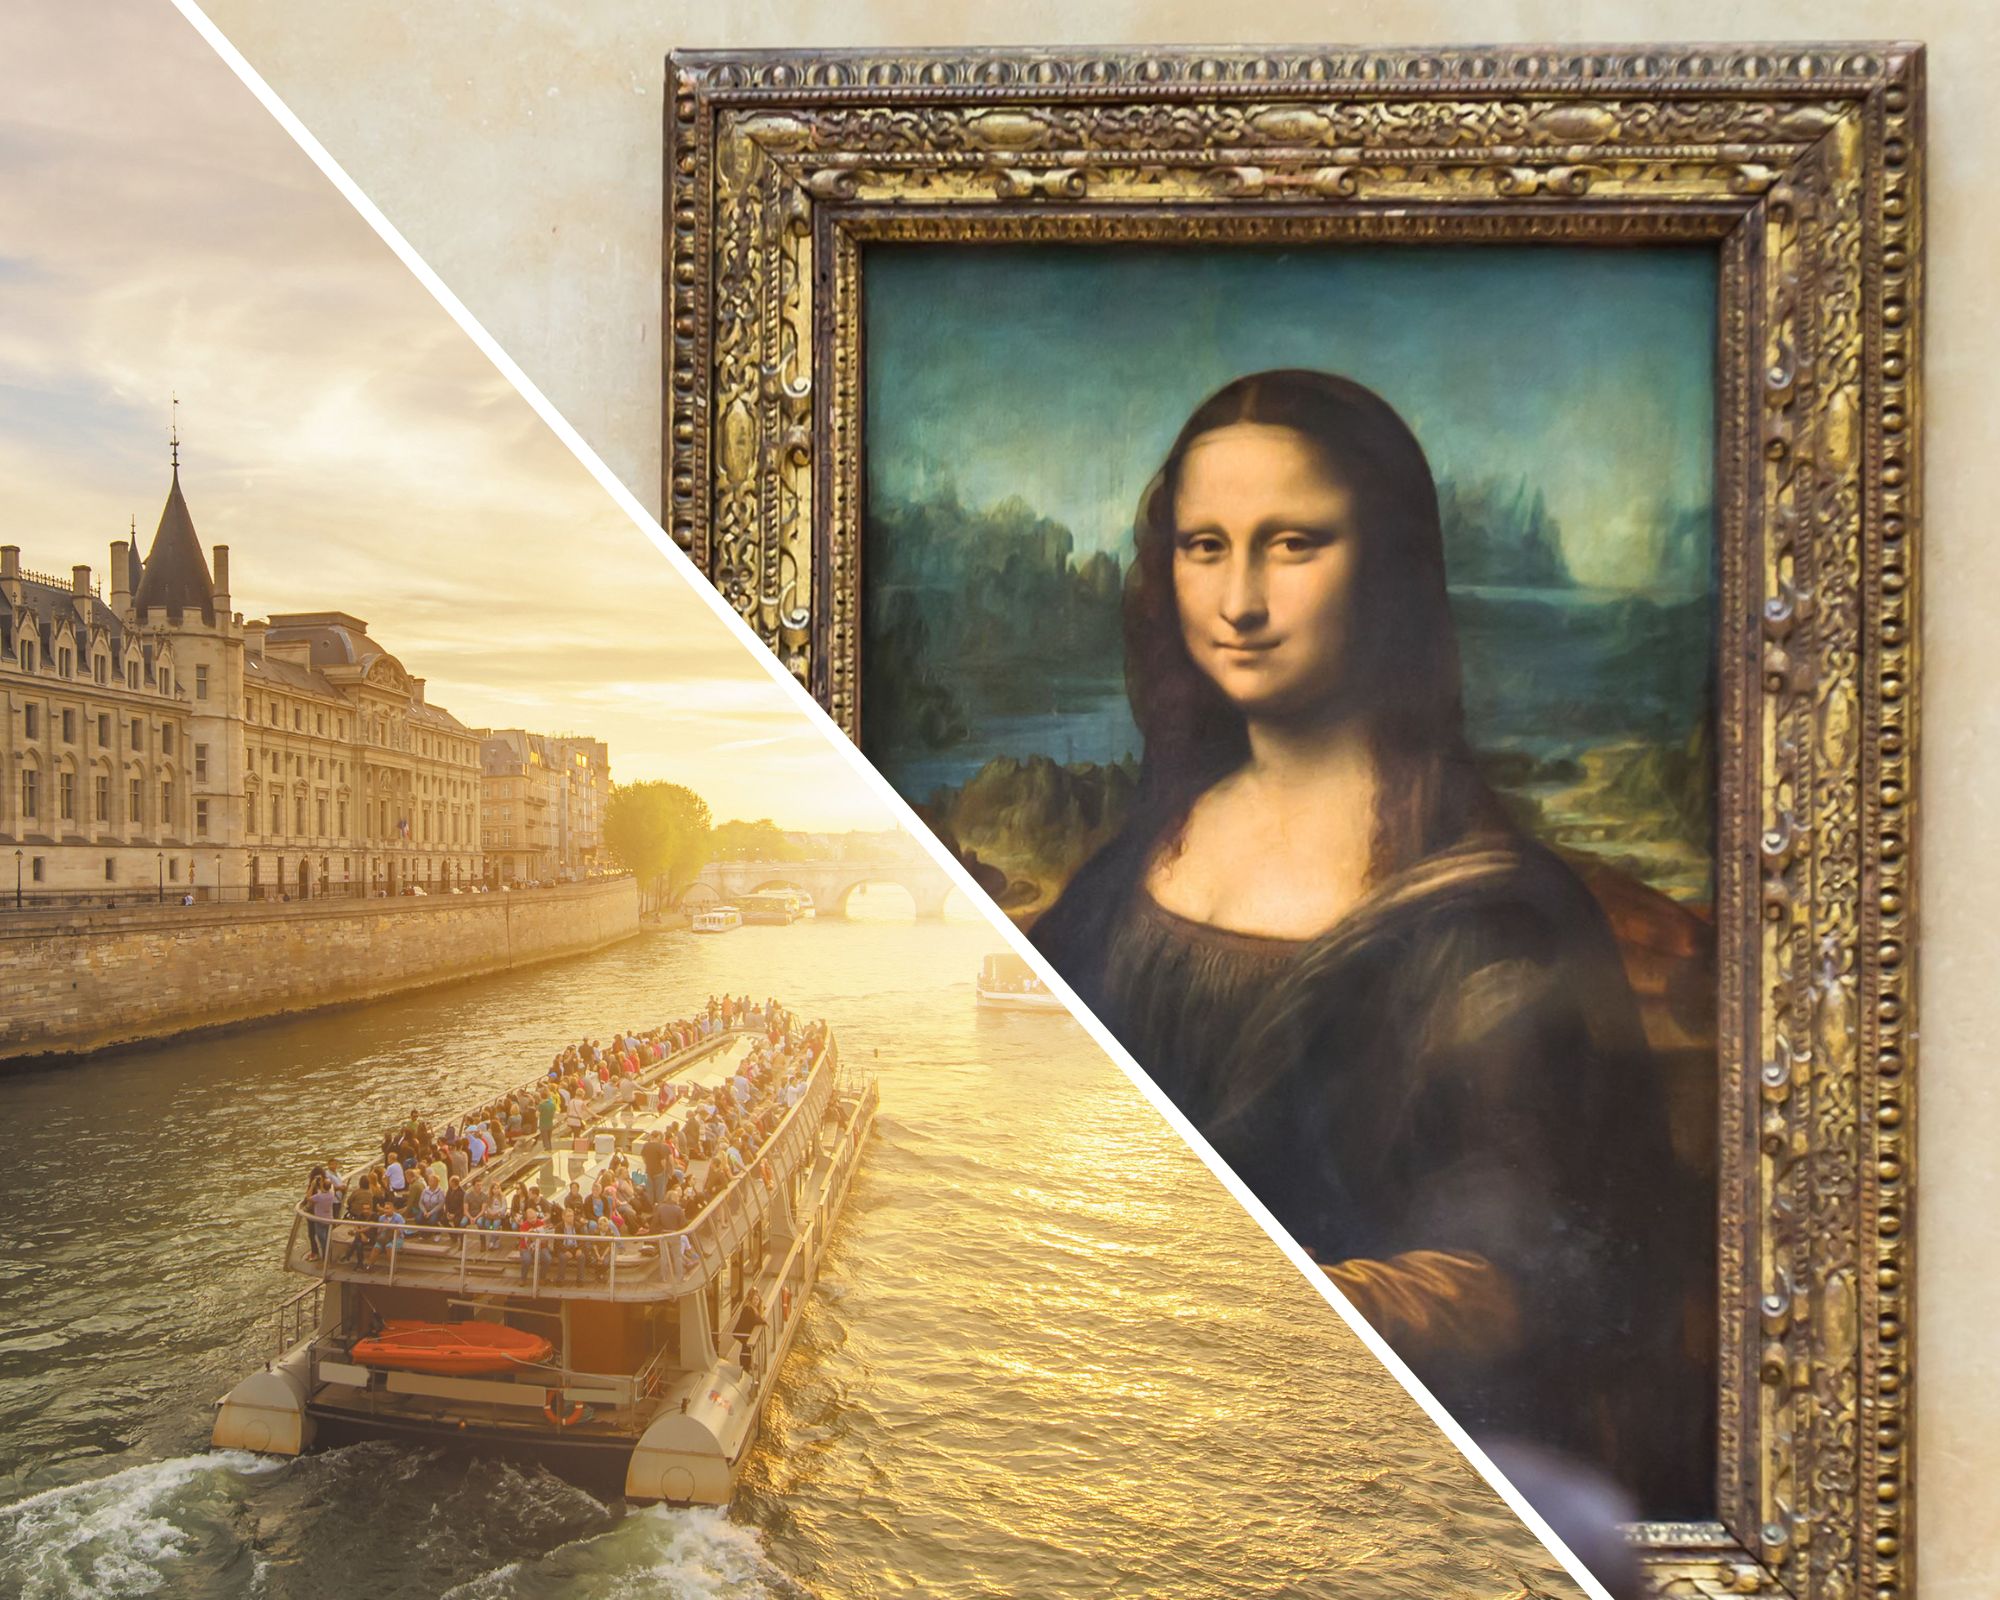 Besuch des Louvre und Ticket für eine Bootsfahrt auf der Seine, Abholung in einer Filiale (mit reservierter Zugang)